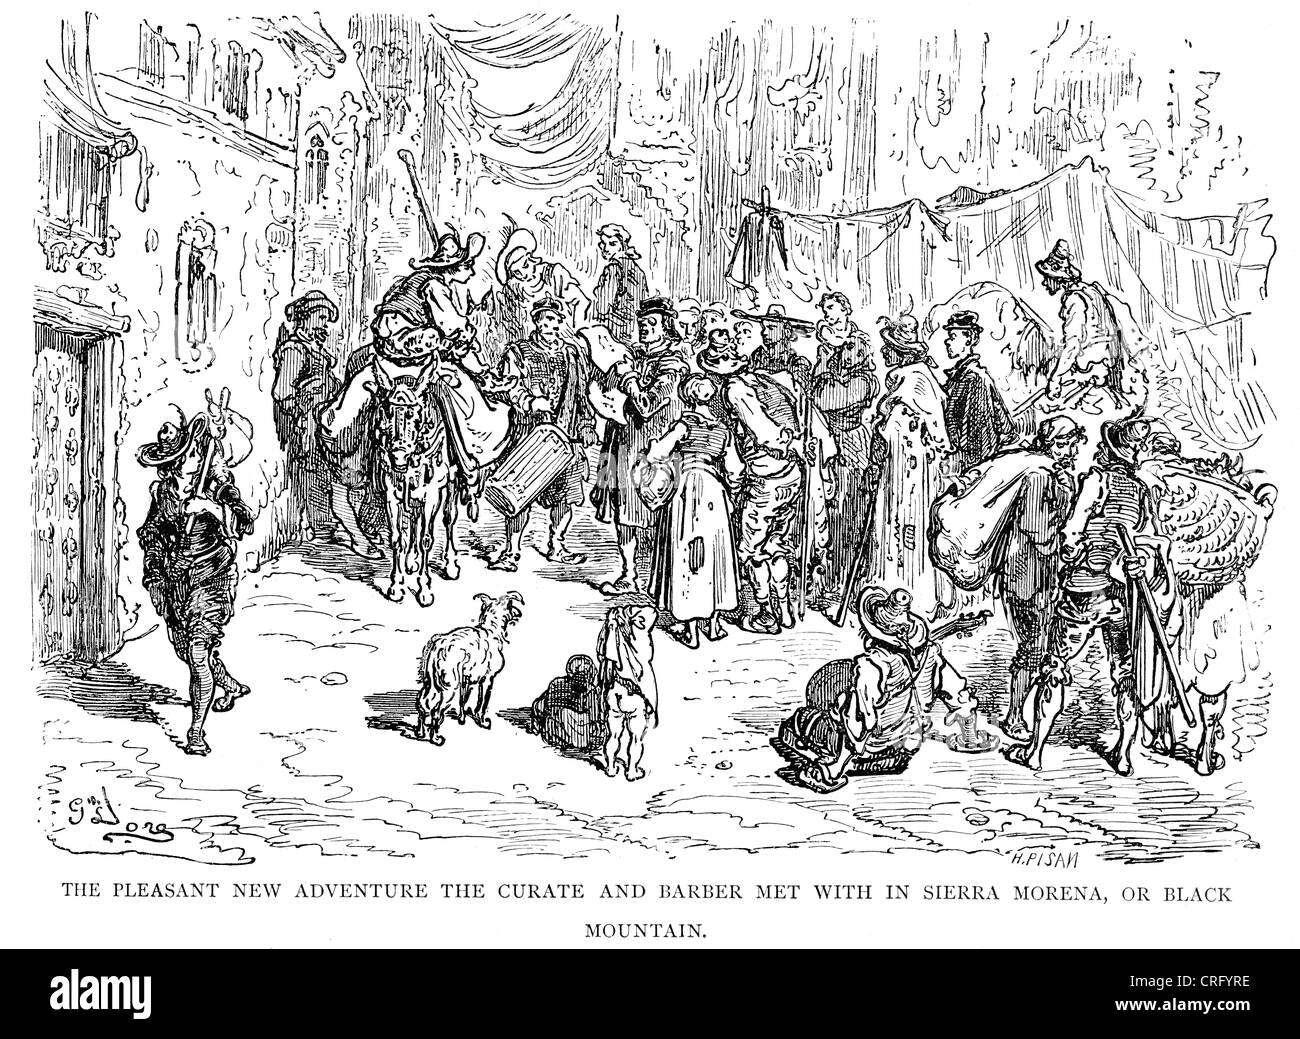 Pfarrer und der Barbier in der Sierra Morena. Illustration von Gustave Dore von Don Quijote. Stockfoto